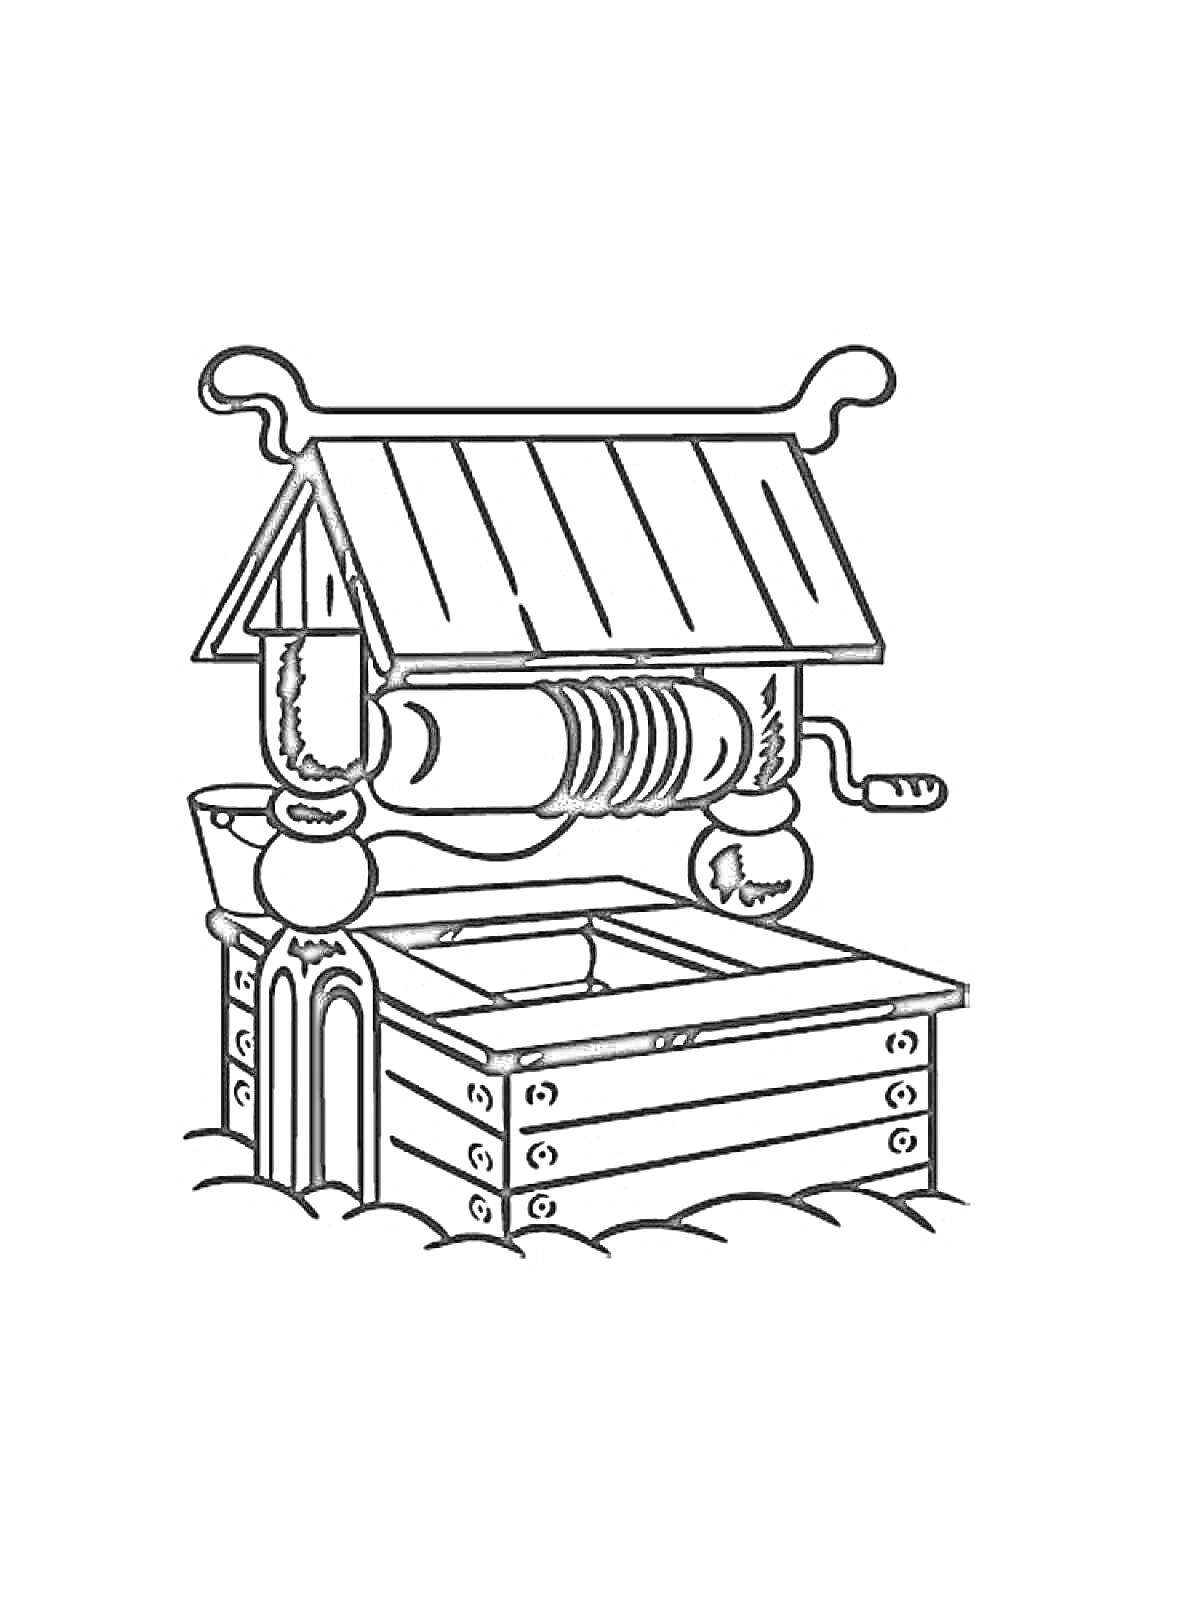 Раскраска Колодец с крышей, ручкой для подъема ведра и деревянной основой